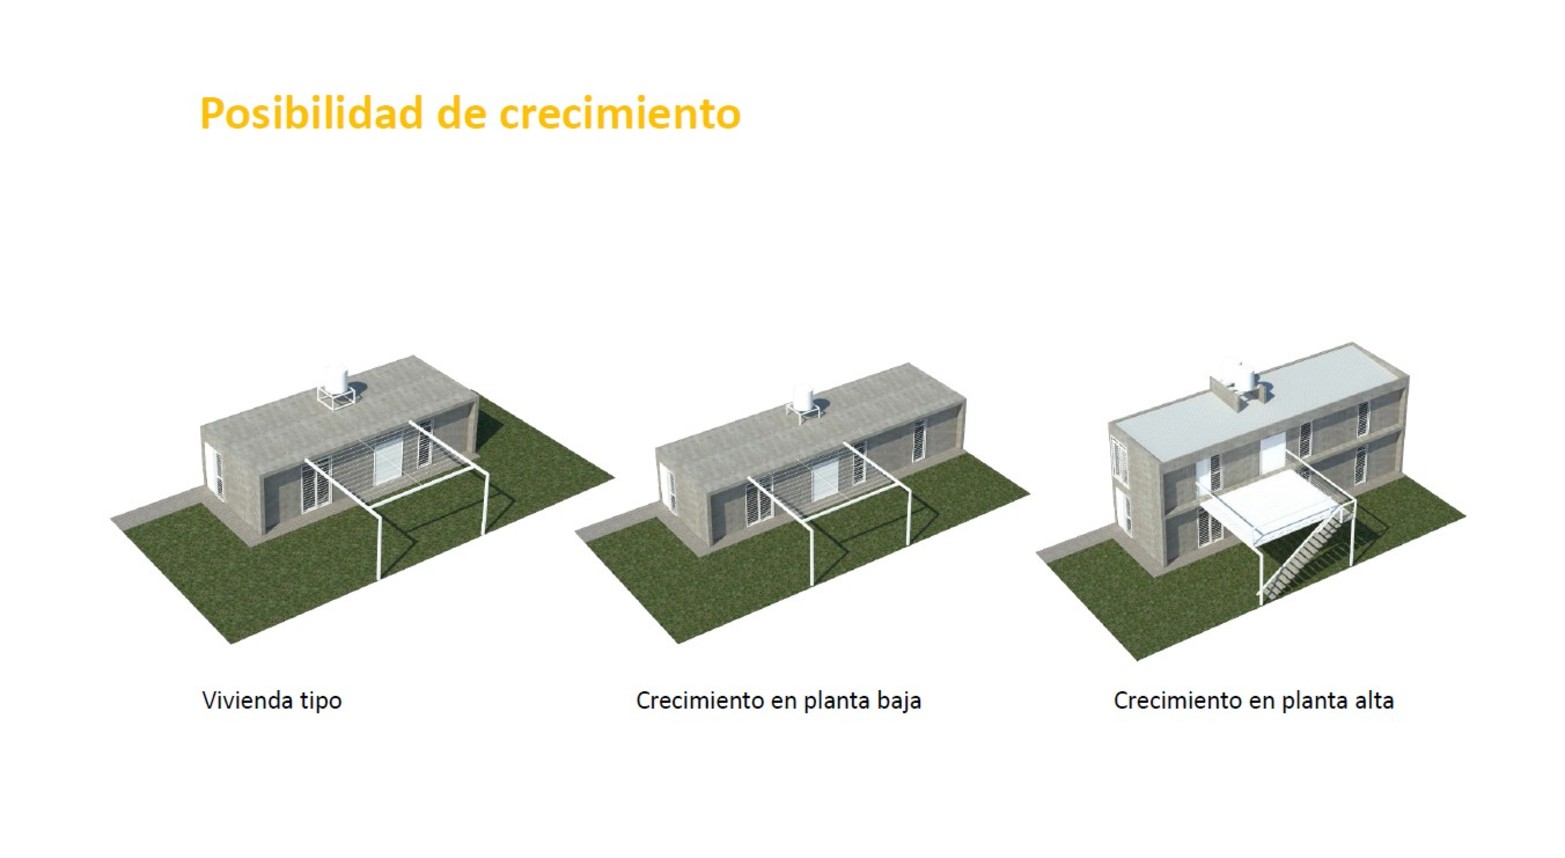 Los distintos modelos de viviendas, en sus diferentes etapas de ampliación.